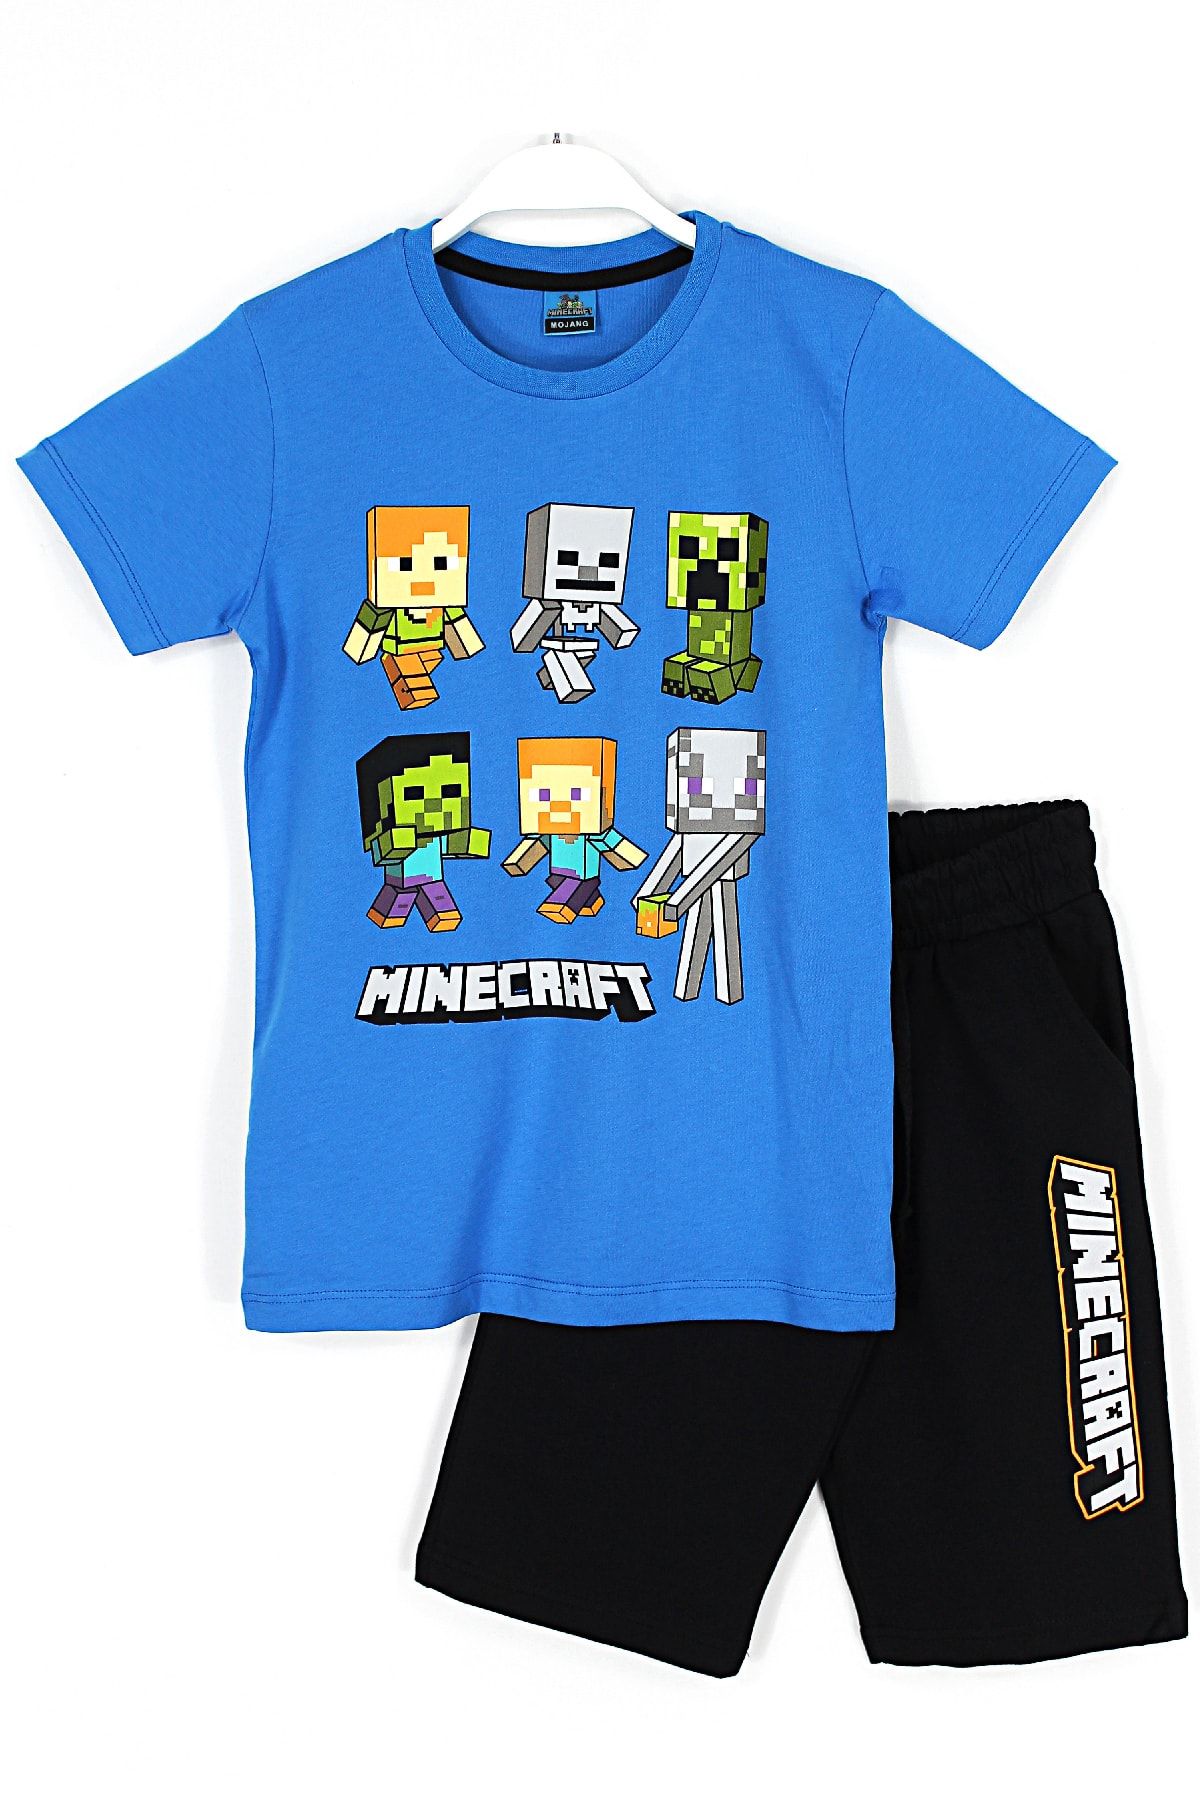 Minecraft Karakterleri Baskılı Erkek Çocuk Kapri T-shirt 2'li Takım Mavi Siyah